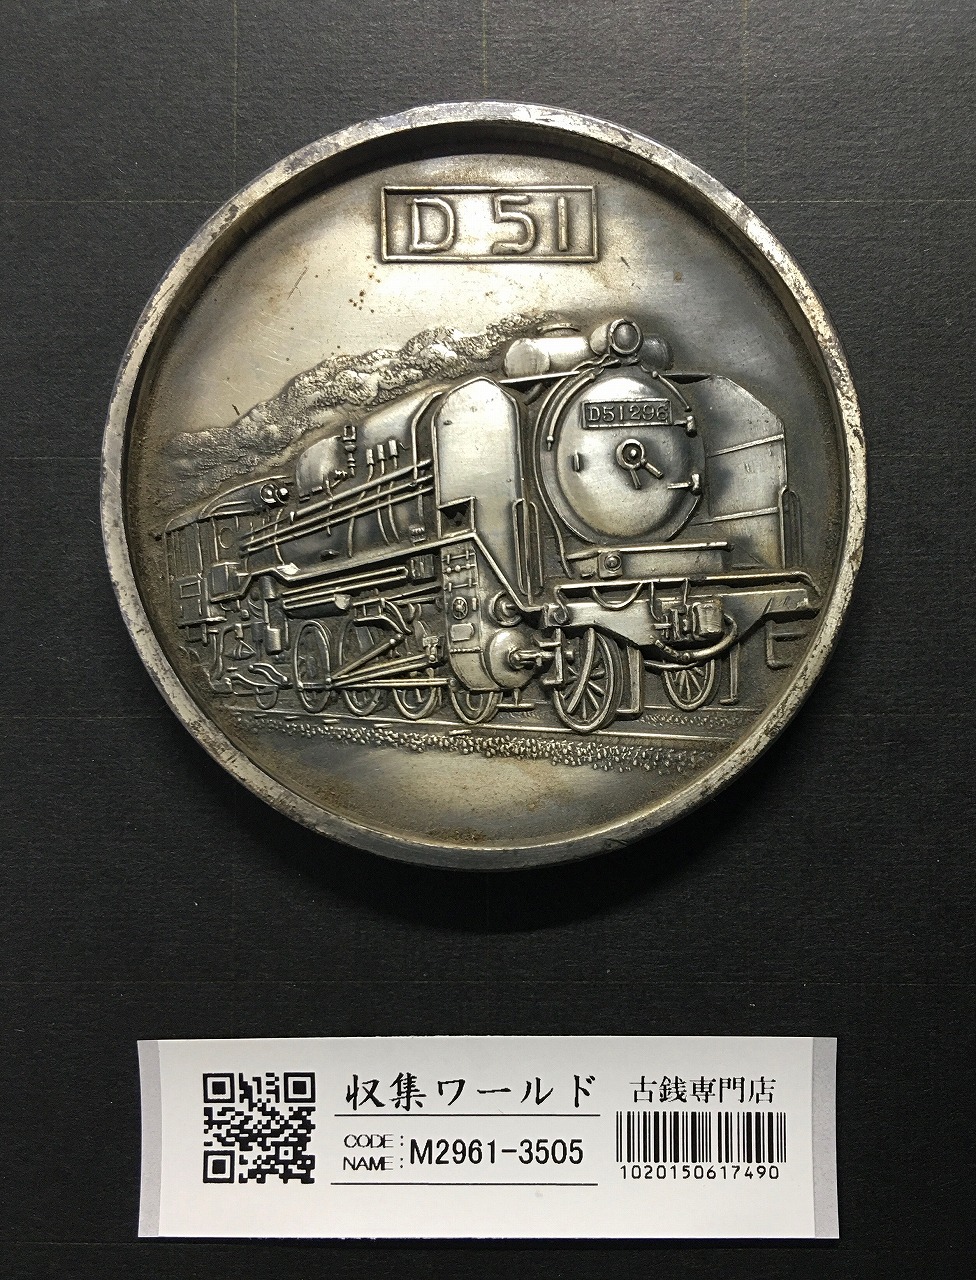 国鉄 蒸気機関車 D51/鉄道唱歌/記念大型メダル φ69.9mm 1972年 美品